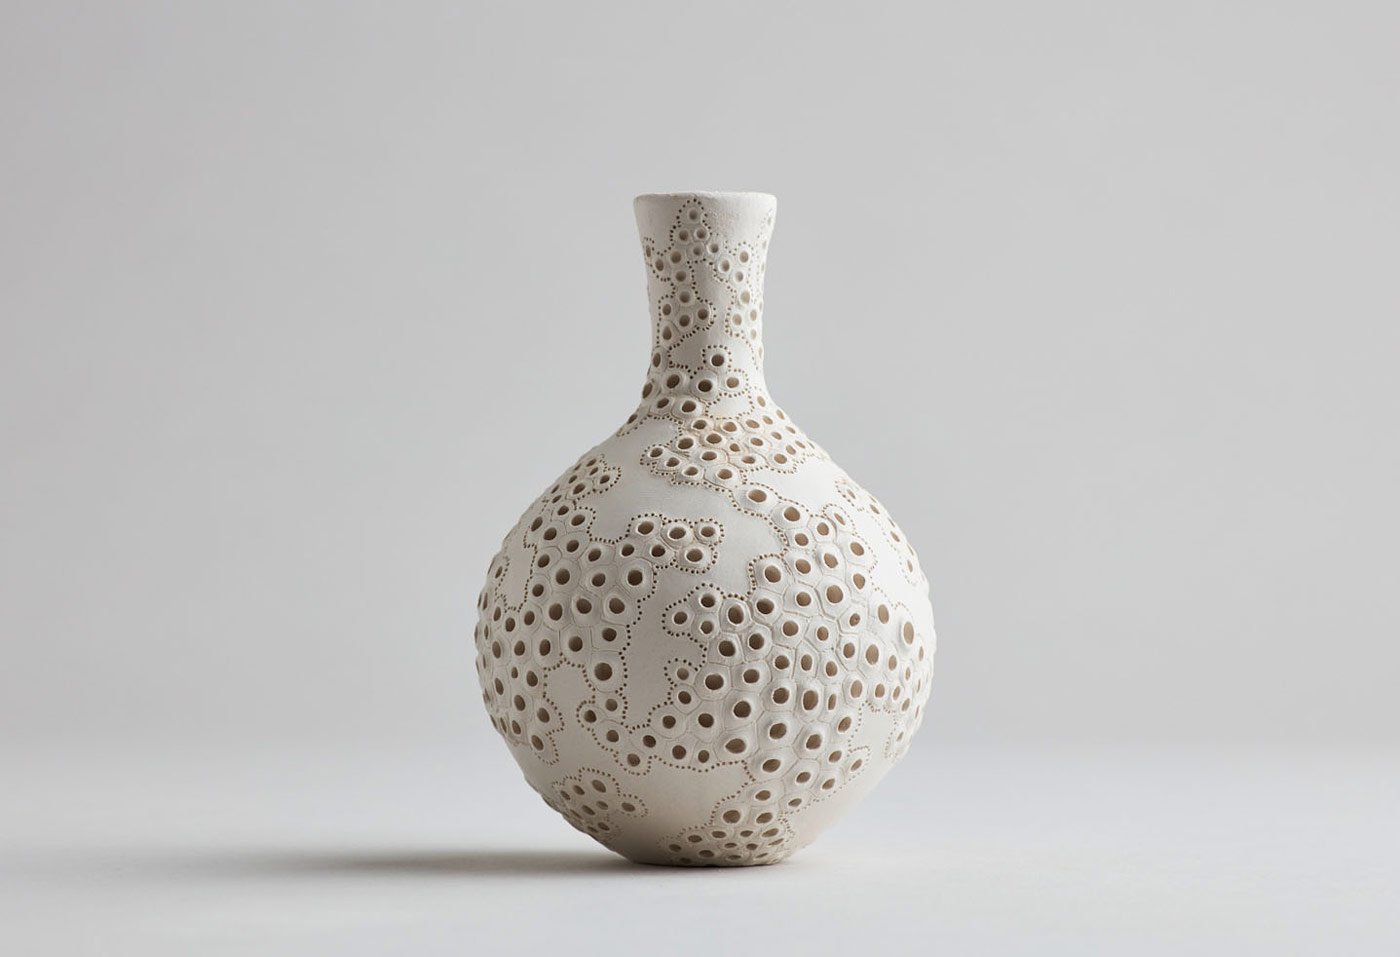 AnnaWhitehouse 6 cerámica arcilla artesanía reto arte 100días creatividad estimulante